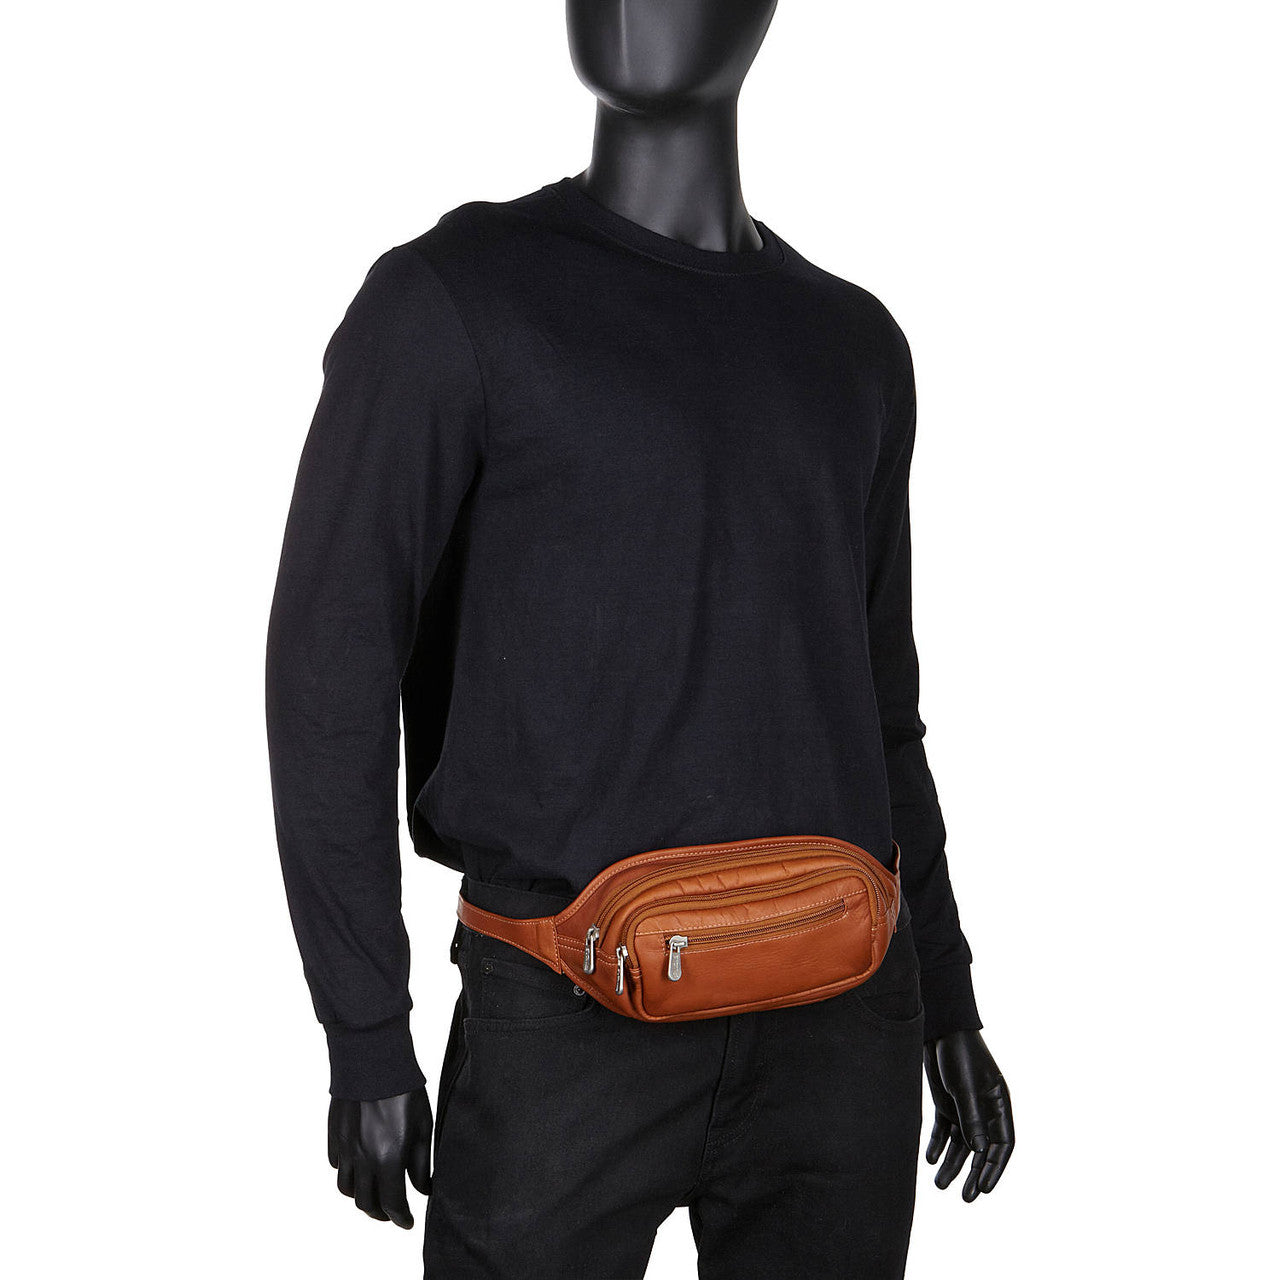 Multi-Zip Oval Waist Bag - Leather Loom